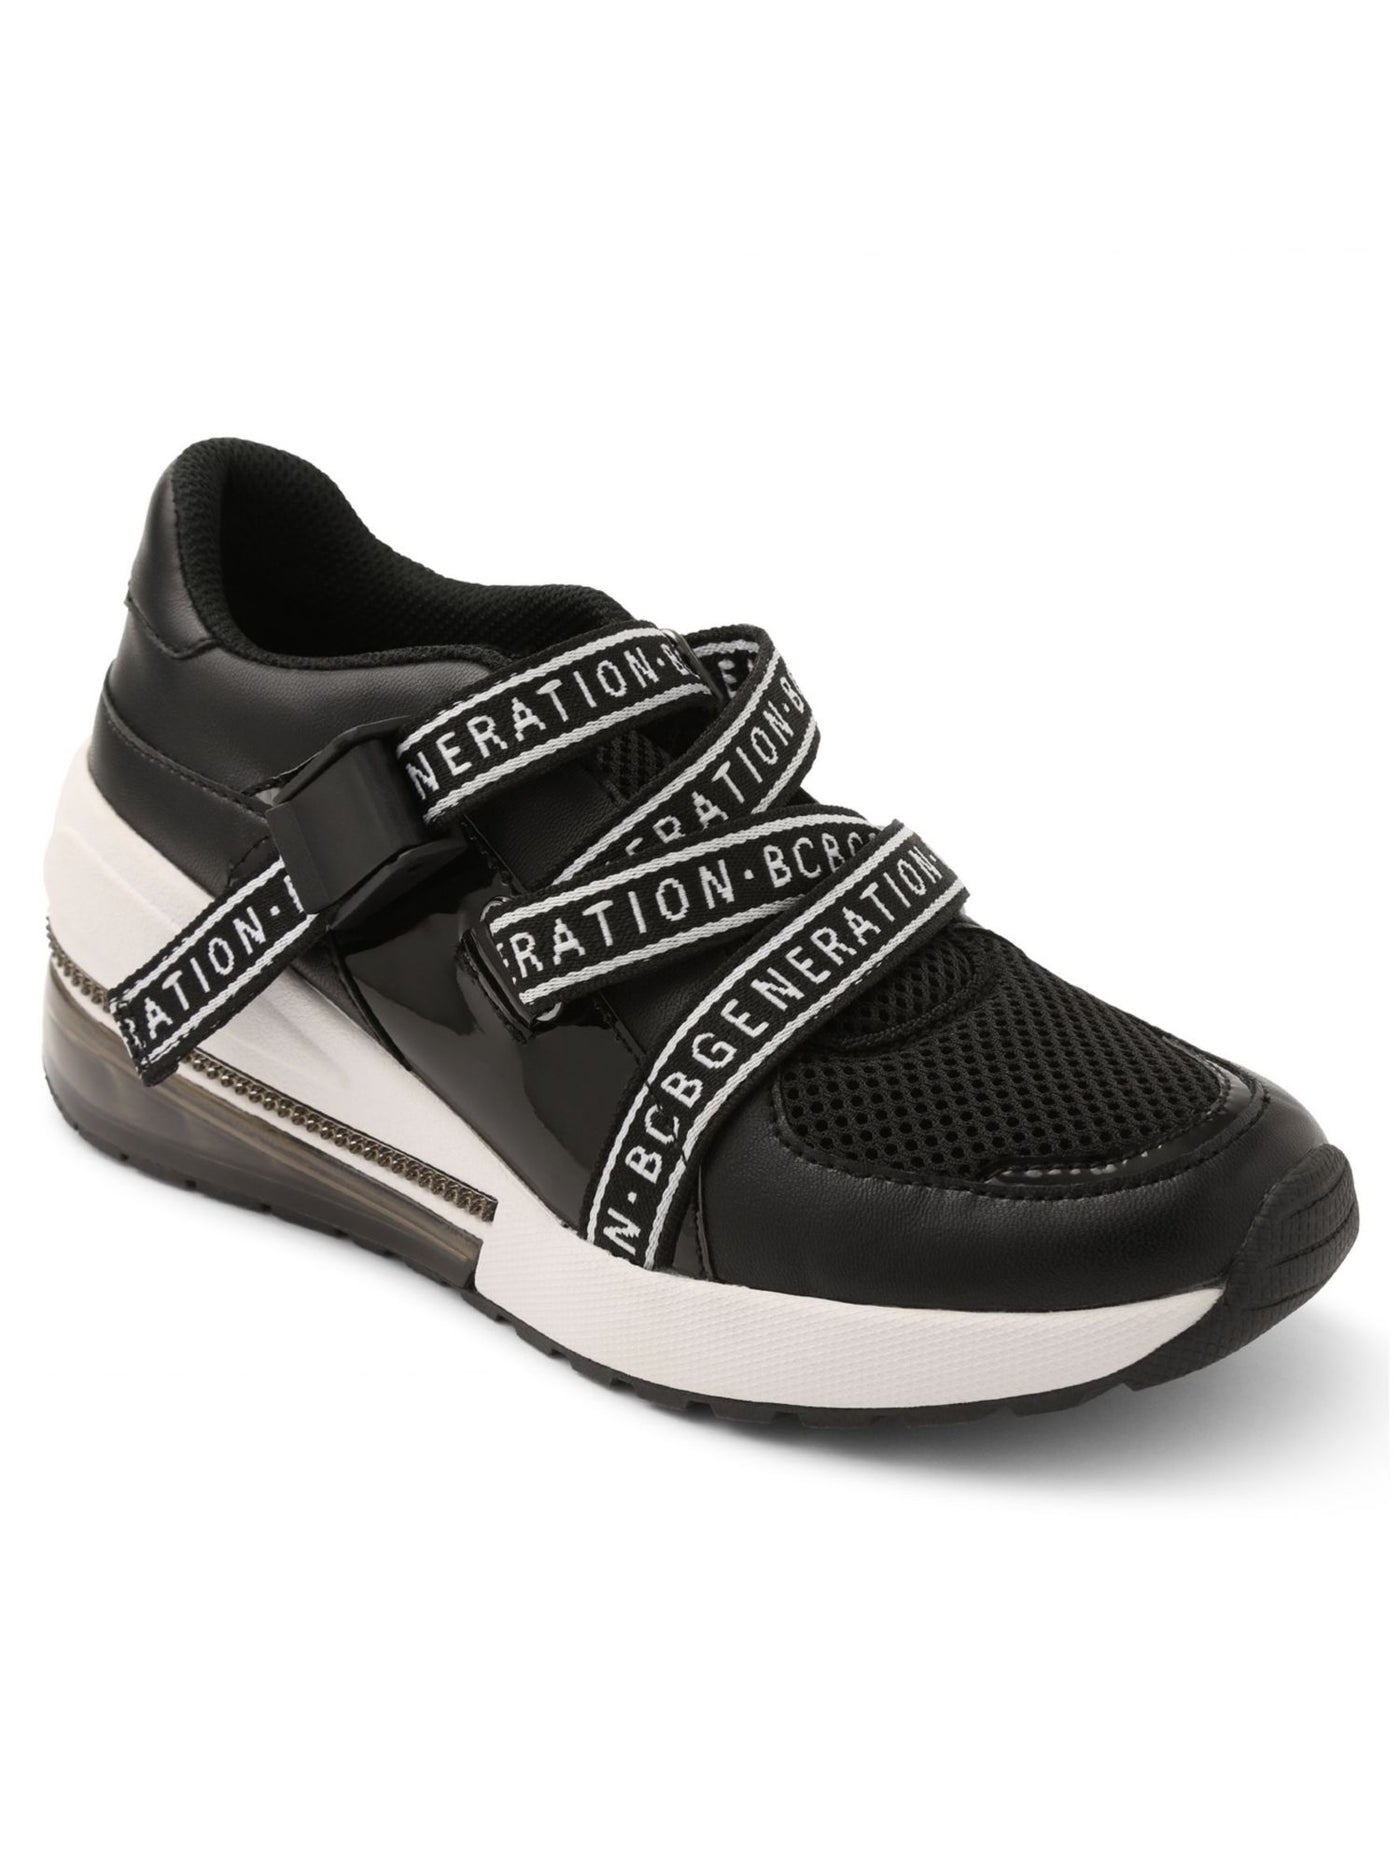 BCBGENERATION Womens Black 1" Platform Chain Hardware Logo Padded Willa Round Toe Wedge Slip On Athletic Training Shoes 7